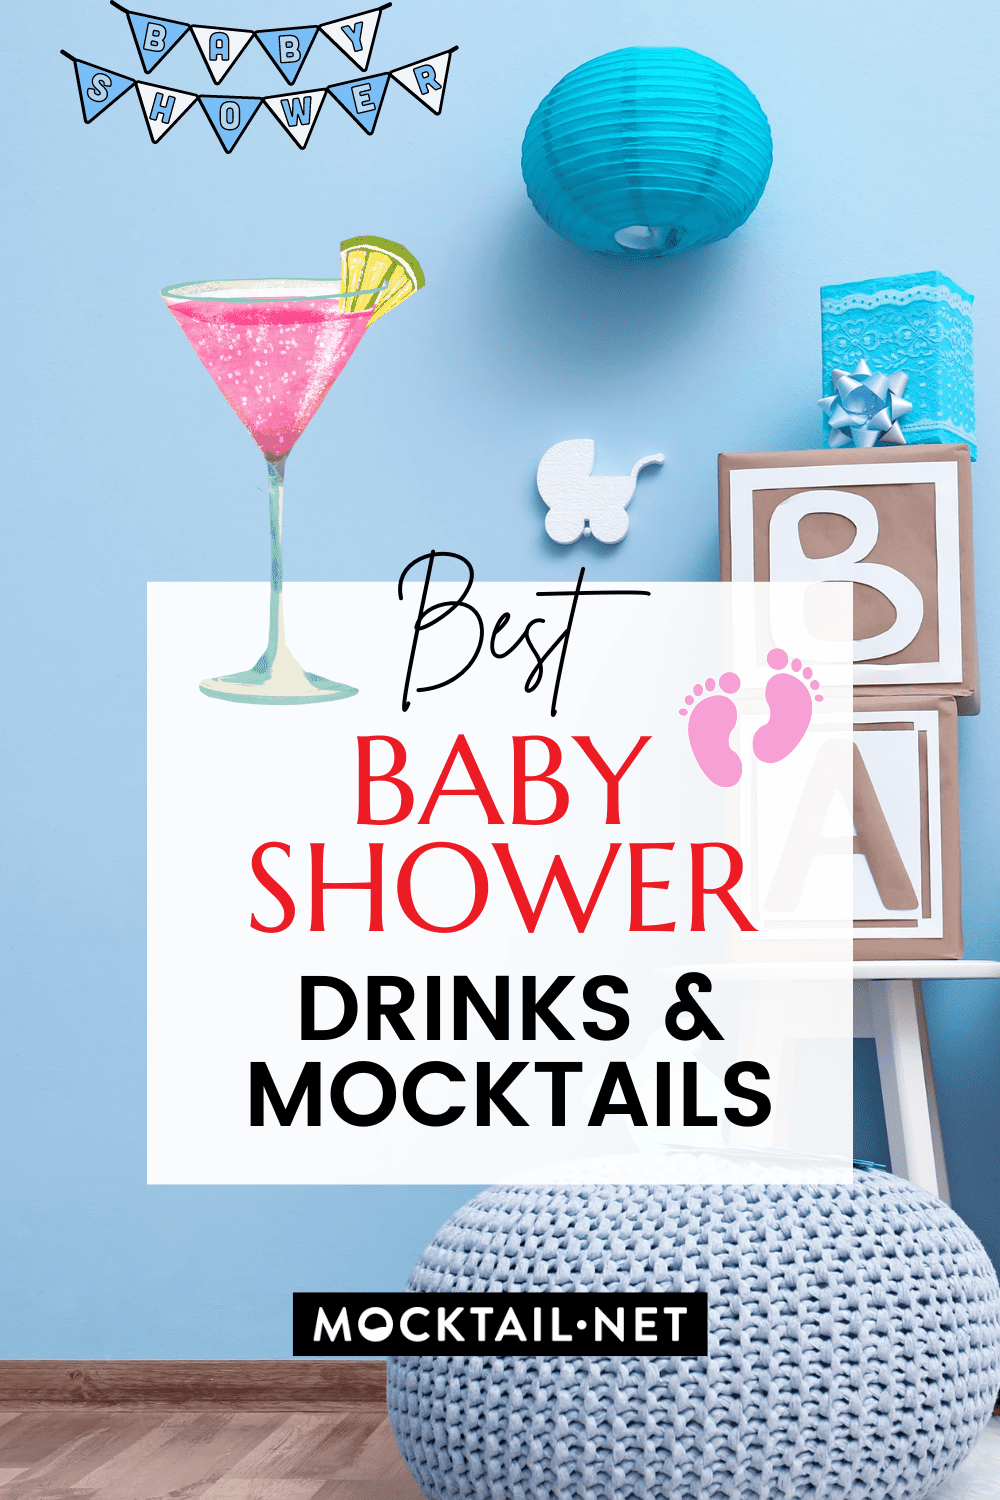 Best Baby Shower Drinks & Mocktails